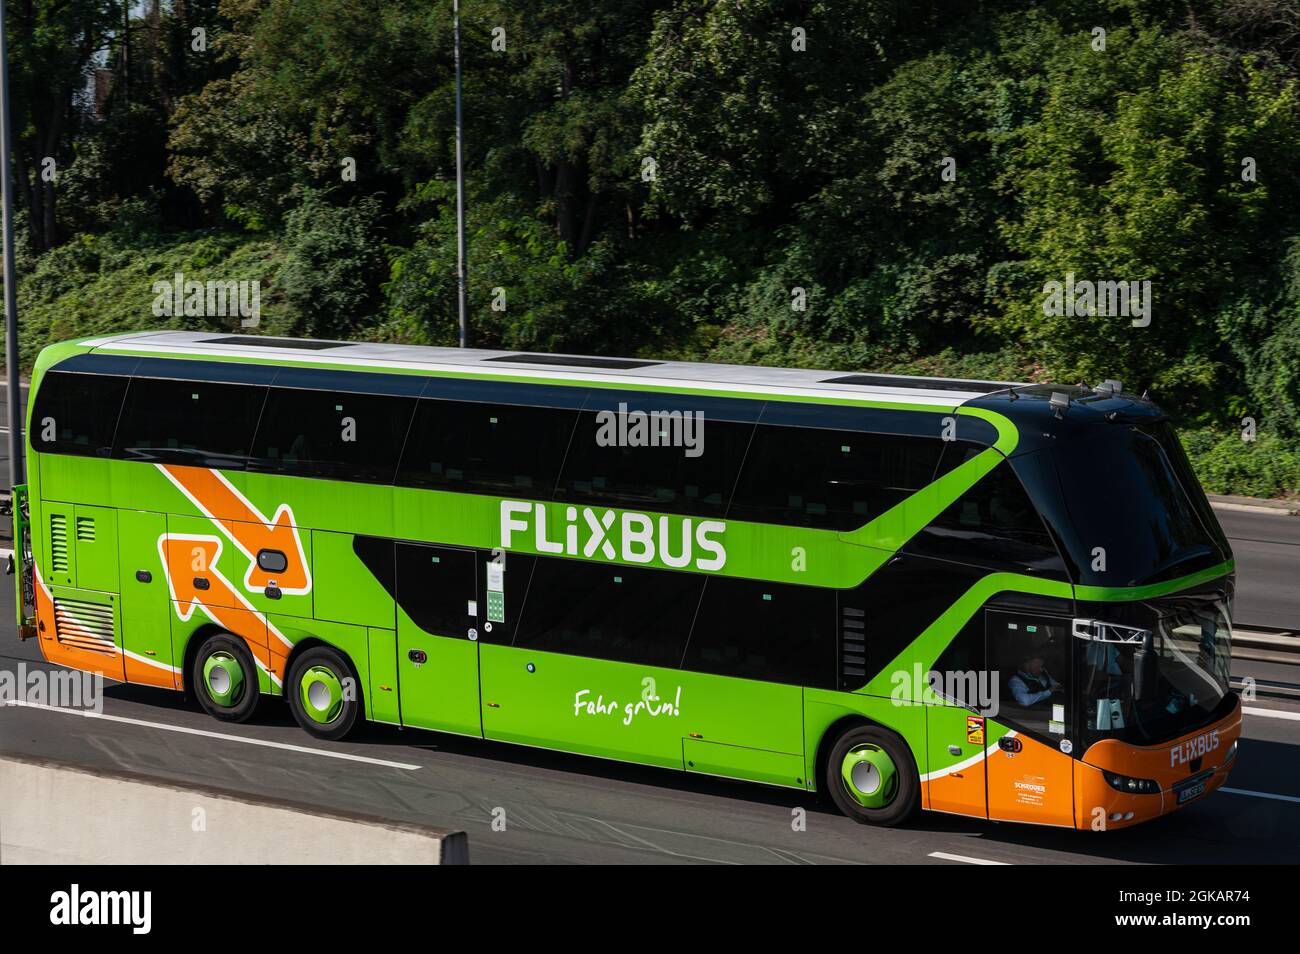 Flixbus Intercity Bus auf der Autobahn. Flixbus ist eine Marke, die  intercity Bus Service in ganz Europa bietet Stockfotografie - Alamy